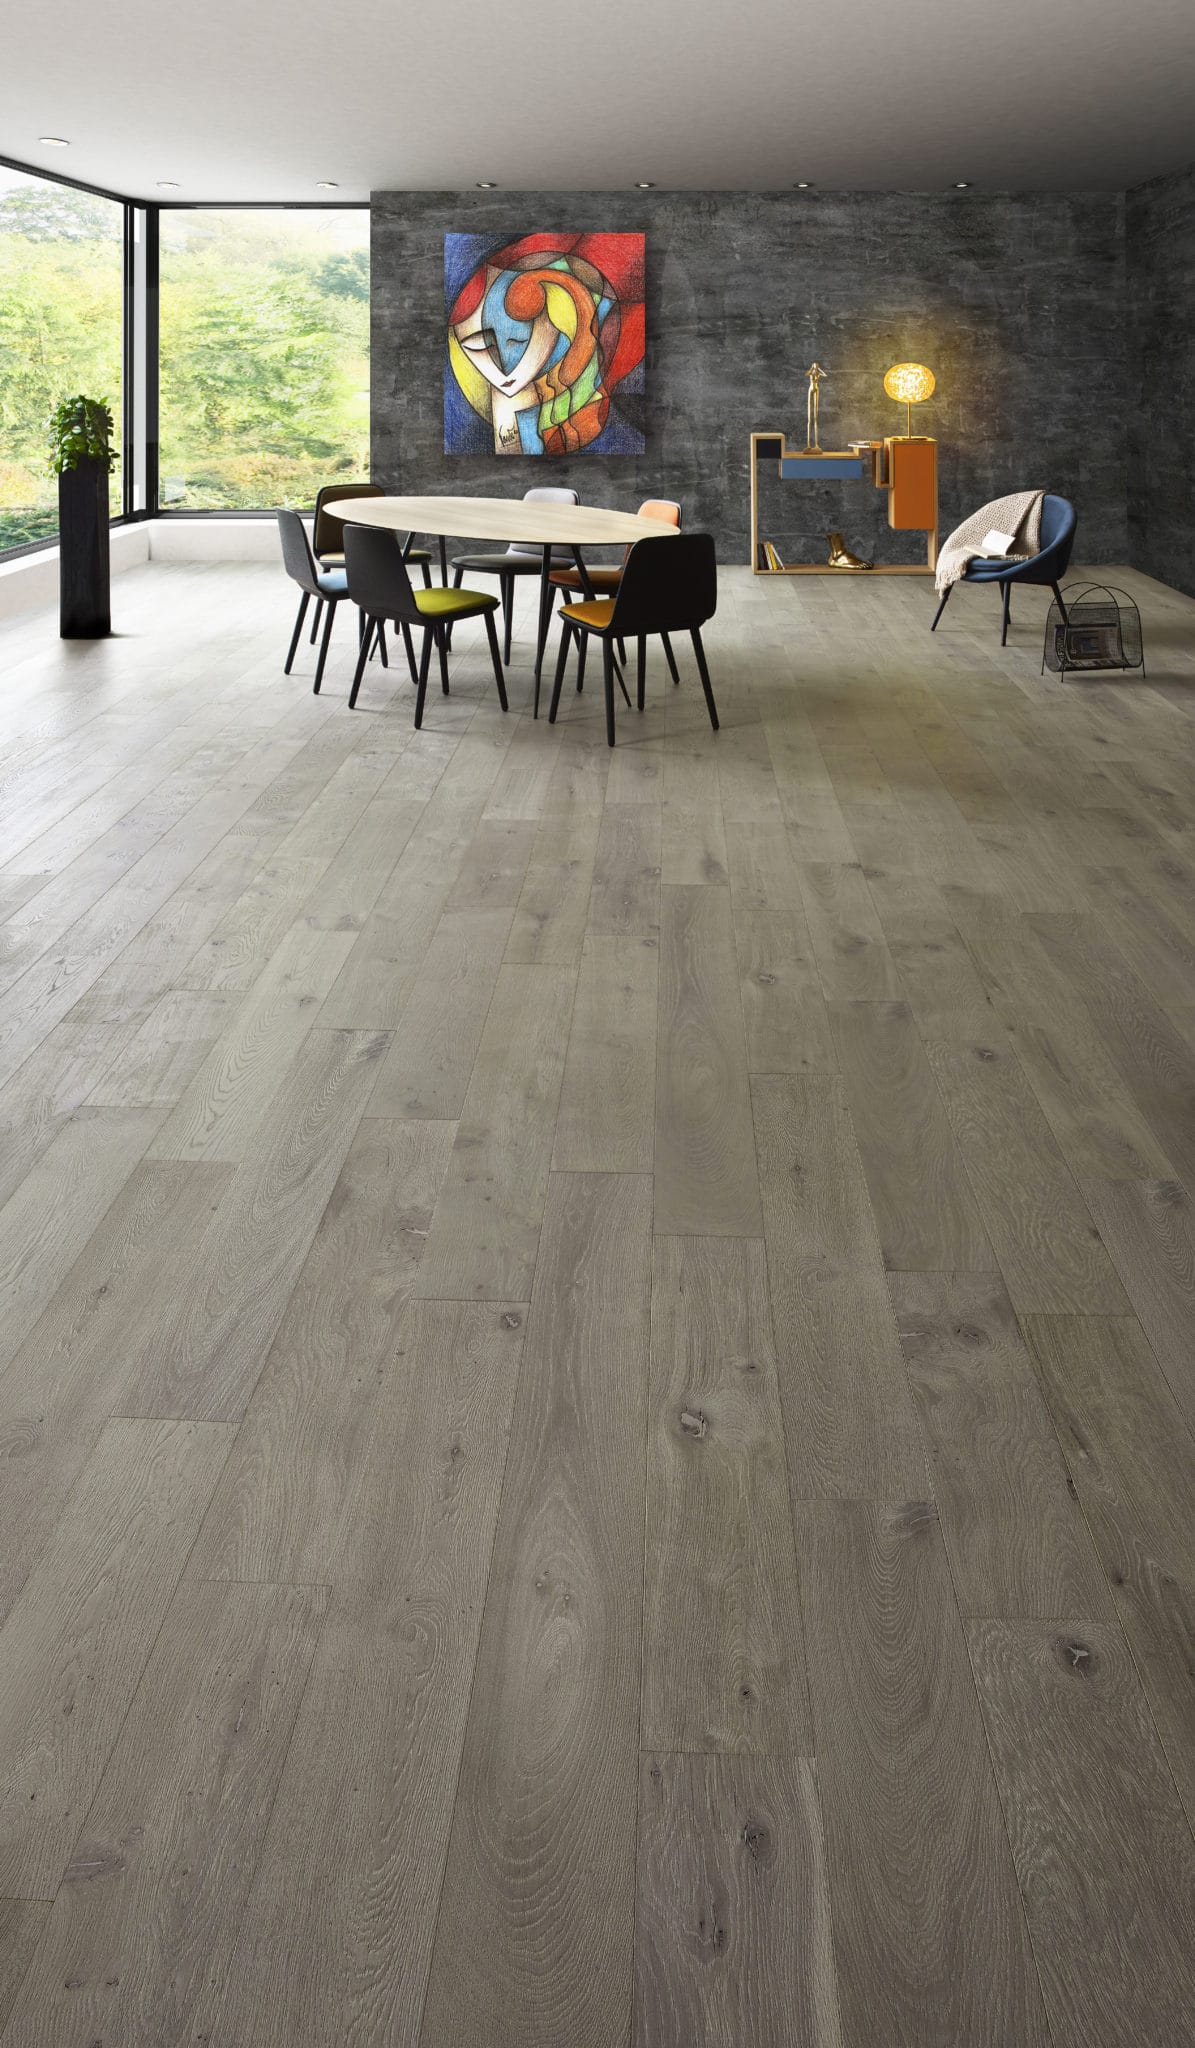 OPIUM ambiance design parquet floor grey structured oil